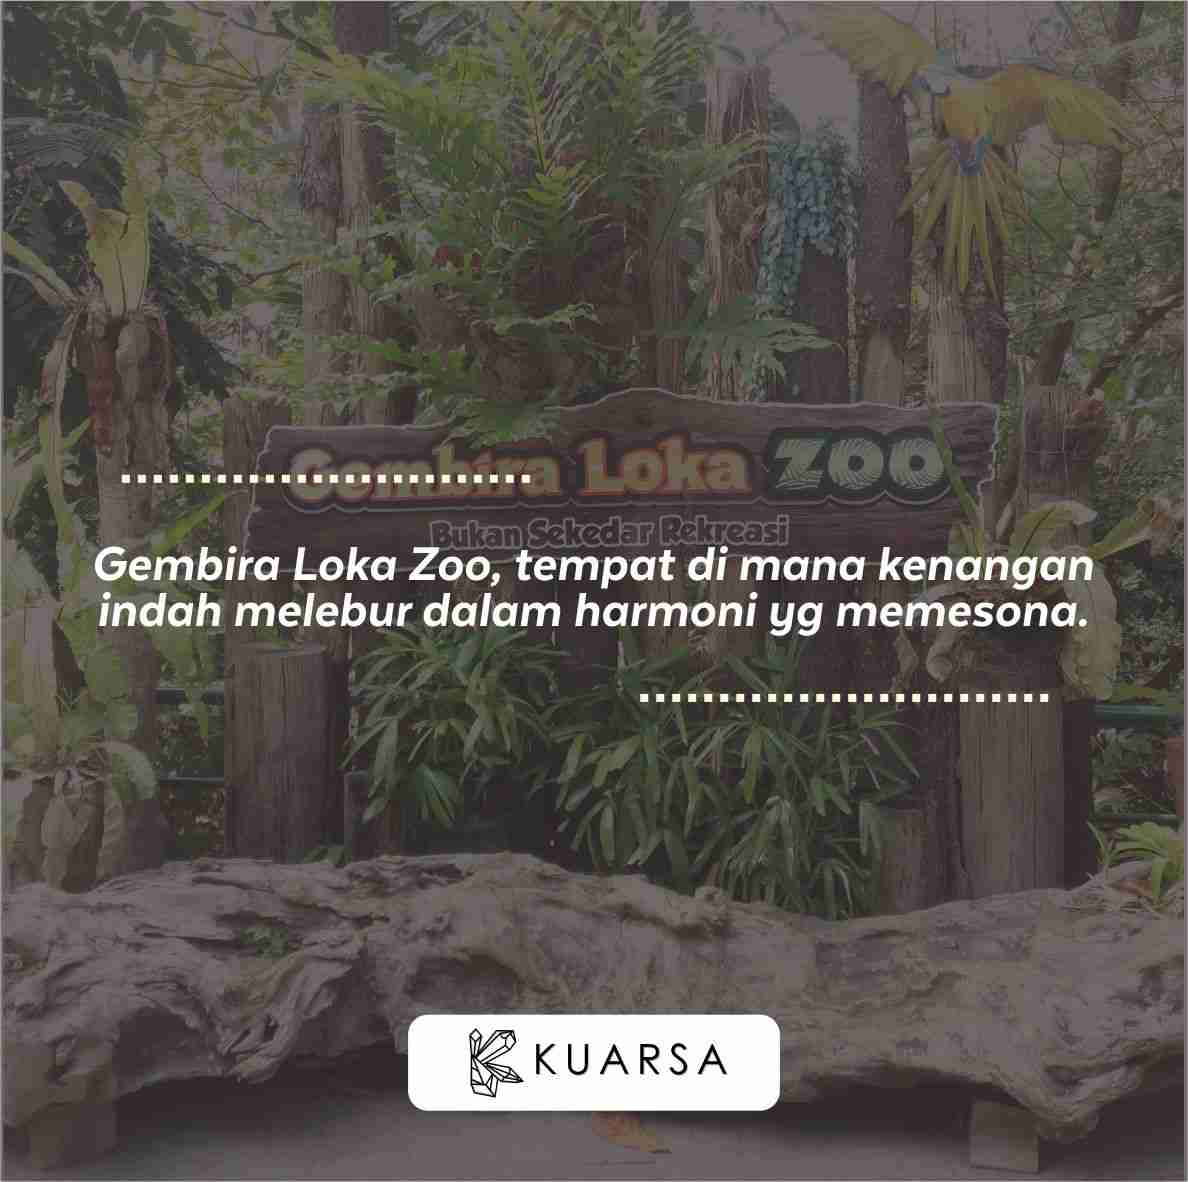 20 Quotes Aesthetic Liburan di Gembira Loka Zoo, Bisa Untuk Caption Instagram Keren